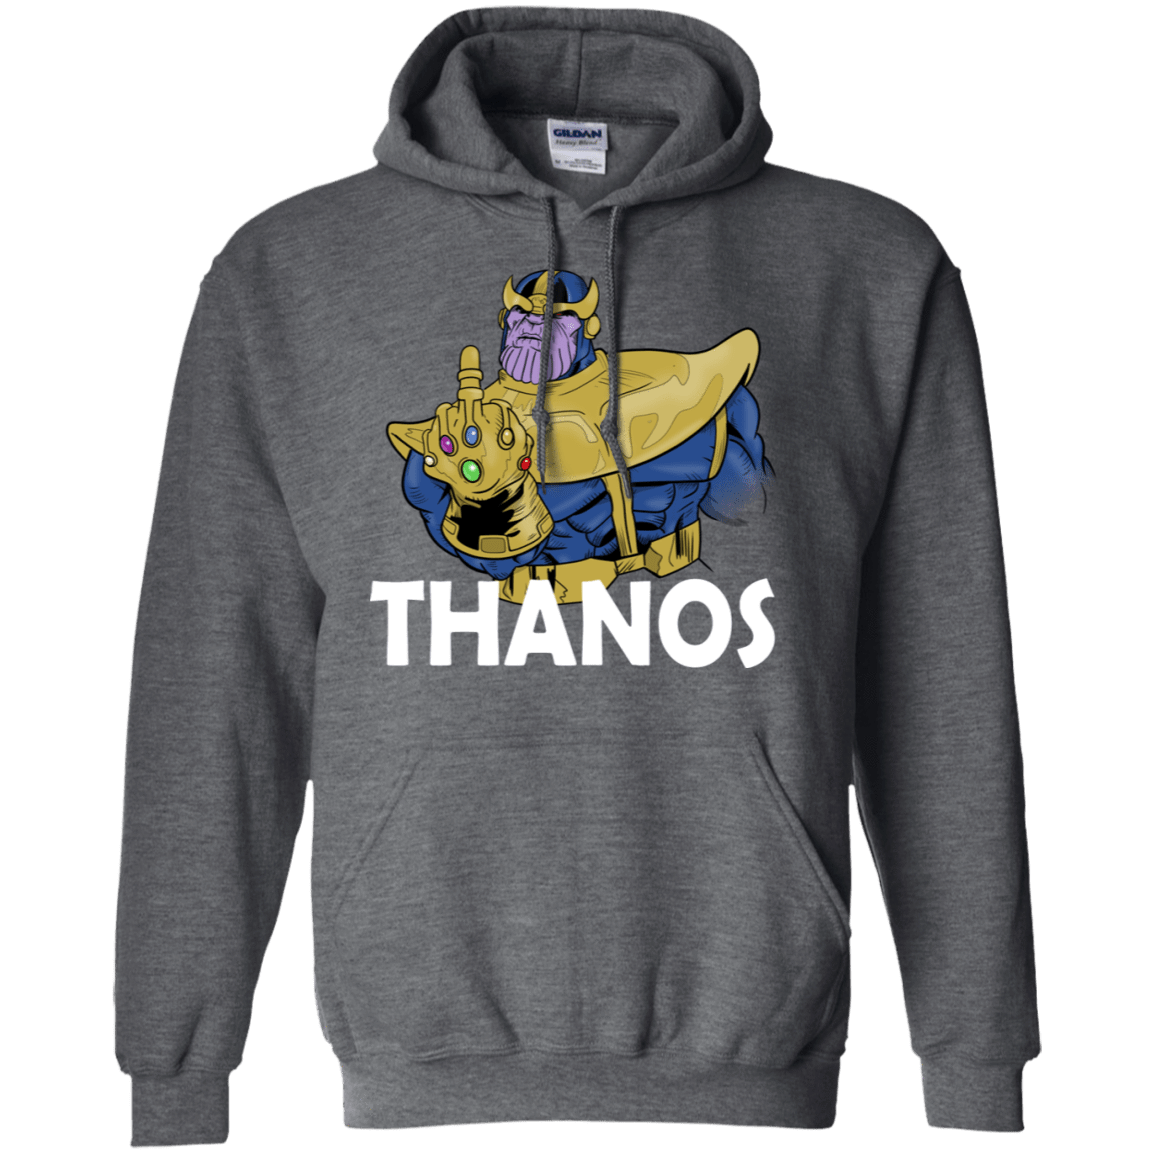 Sweatshirts Dark Heather / S Thanos Cash Pullover Hoodie